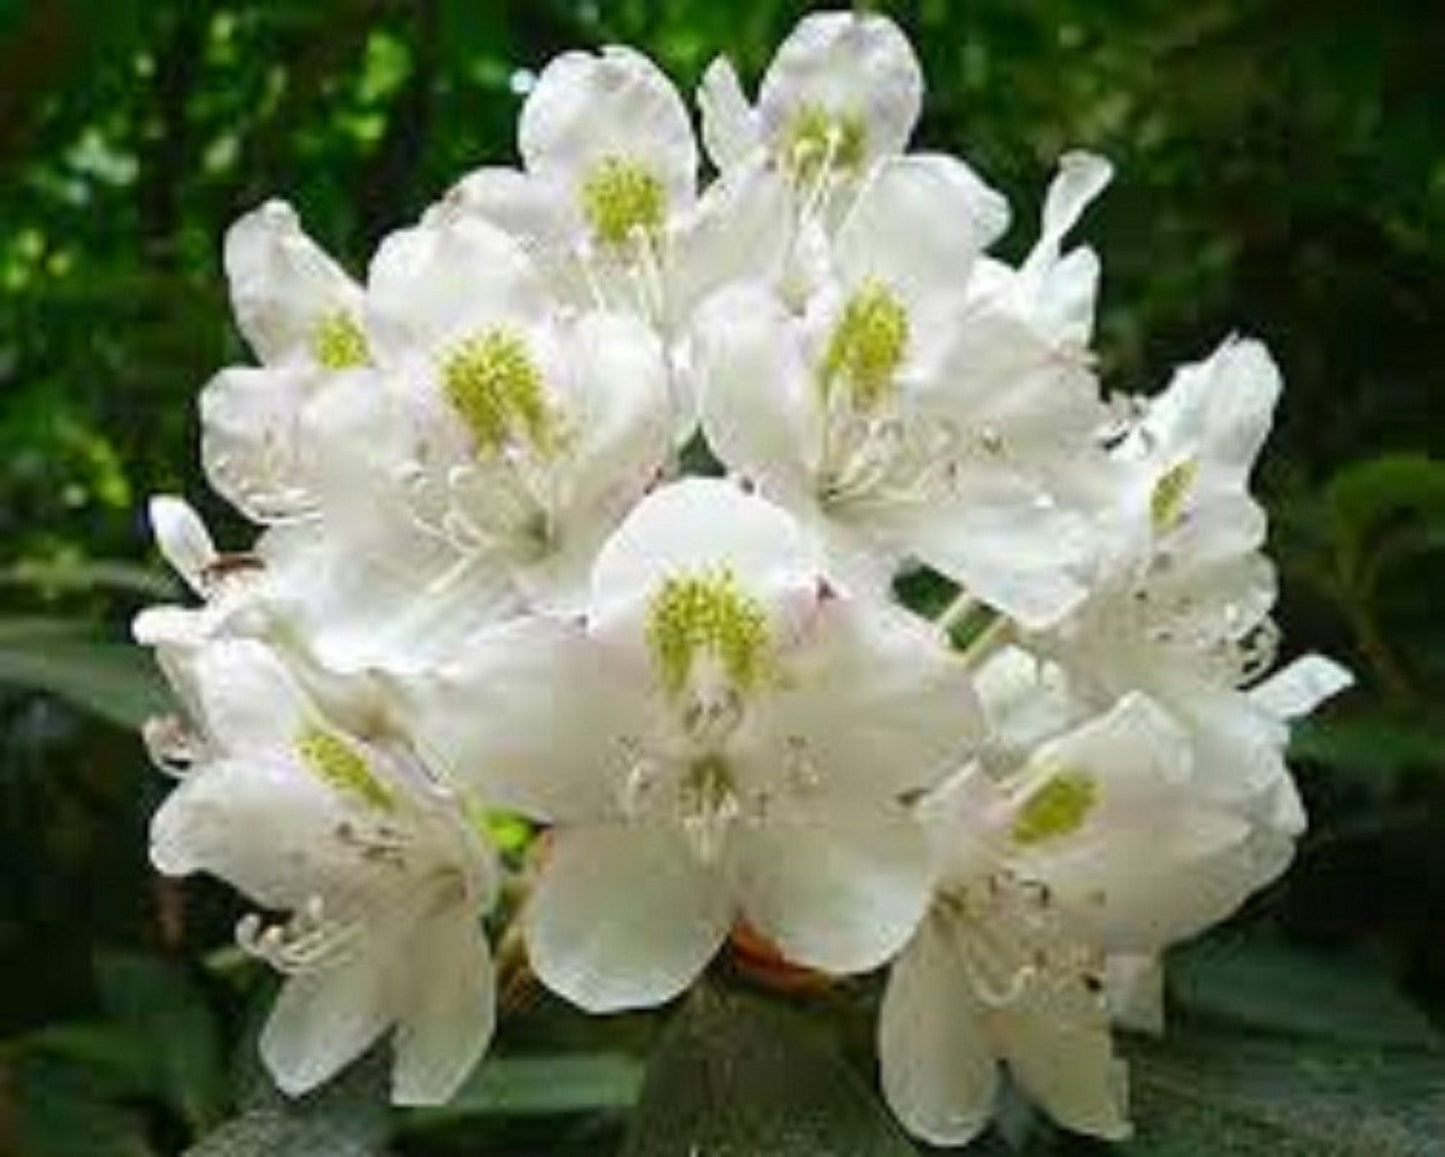 Rhododendron Maximum * Rosebay White Pink Laurel * Stunning Bush * 50 Seeds *